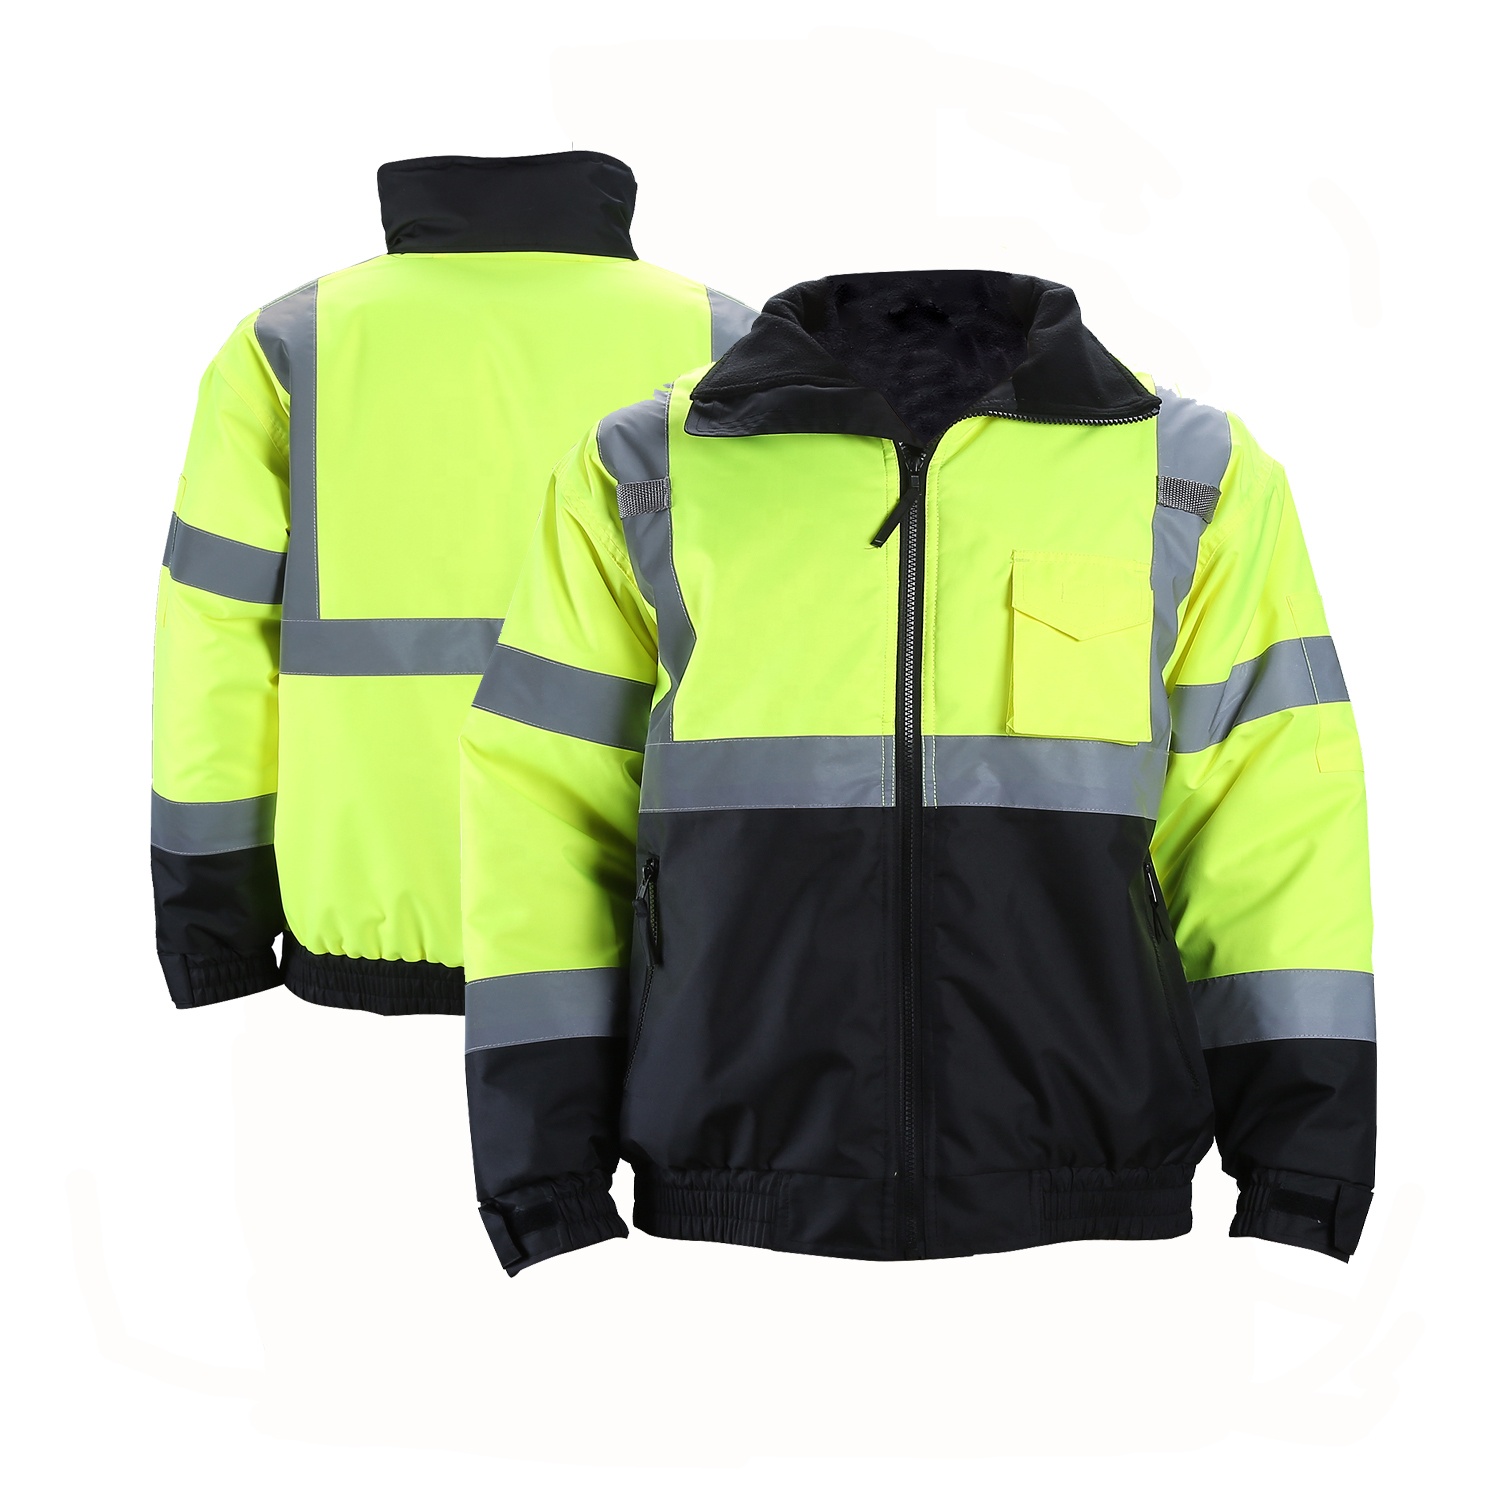 ANSI/ISEA 107-2020 Safety Clothing Work Reflective Jacket